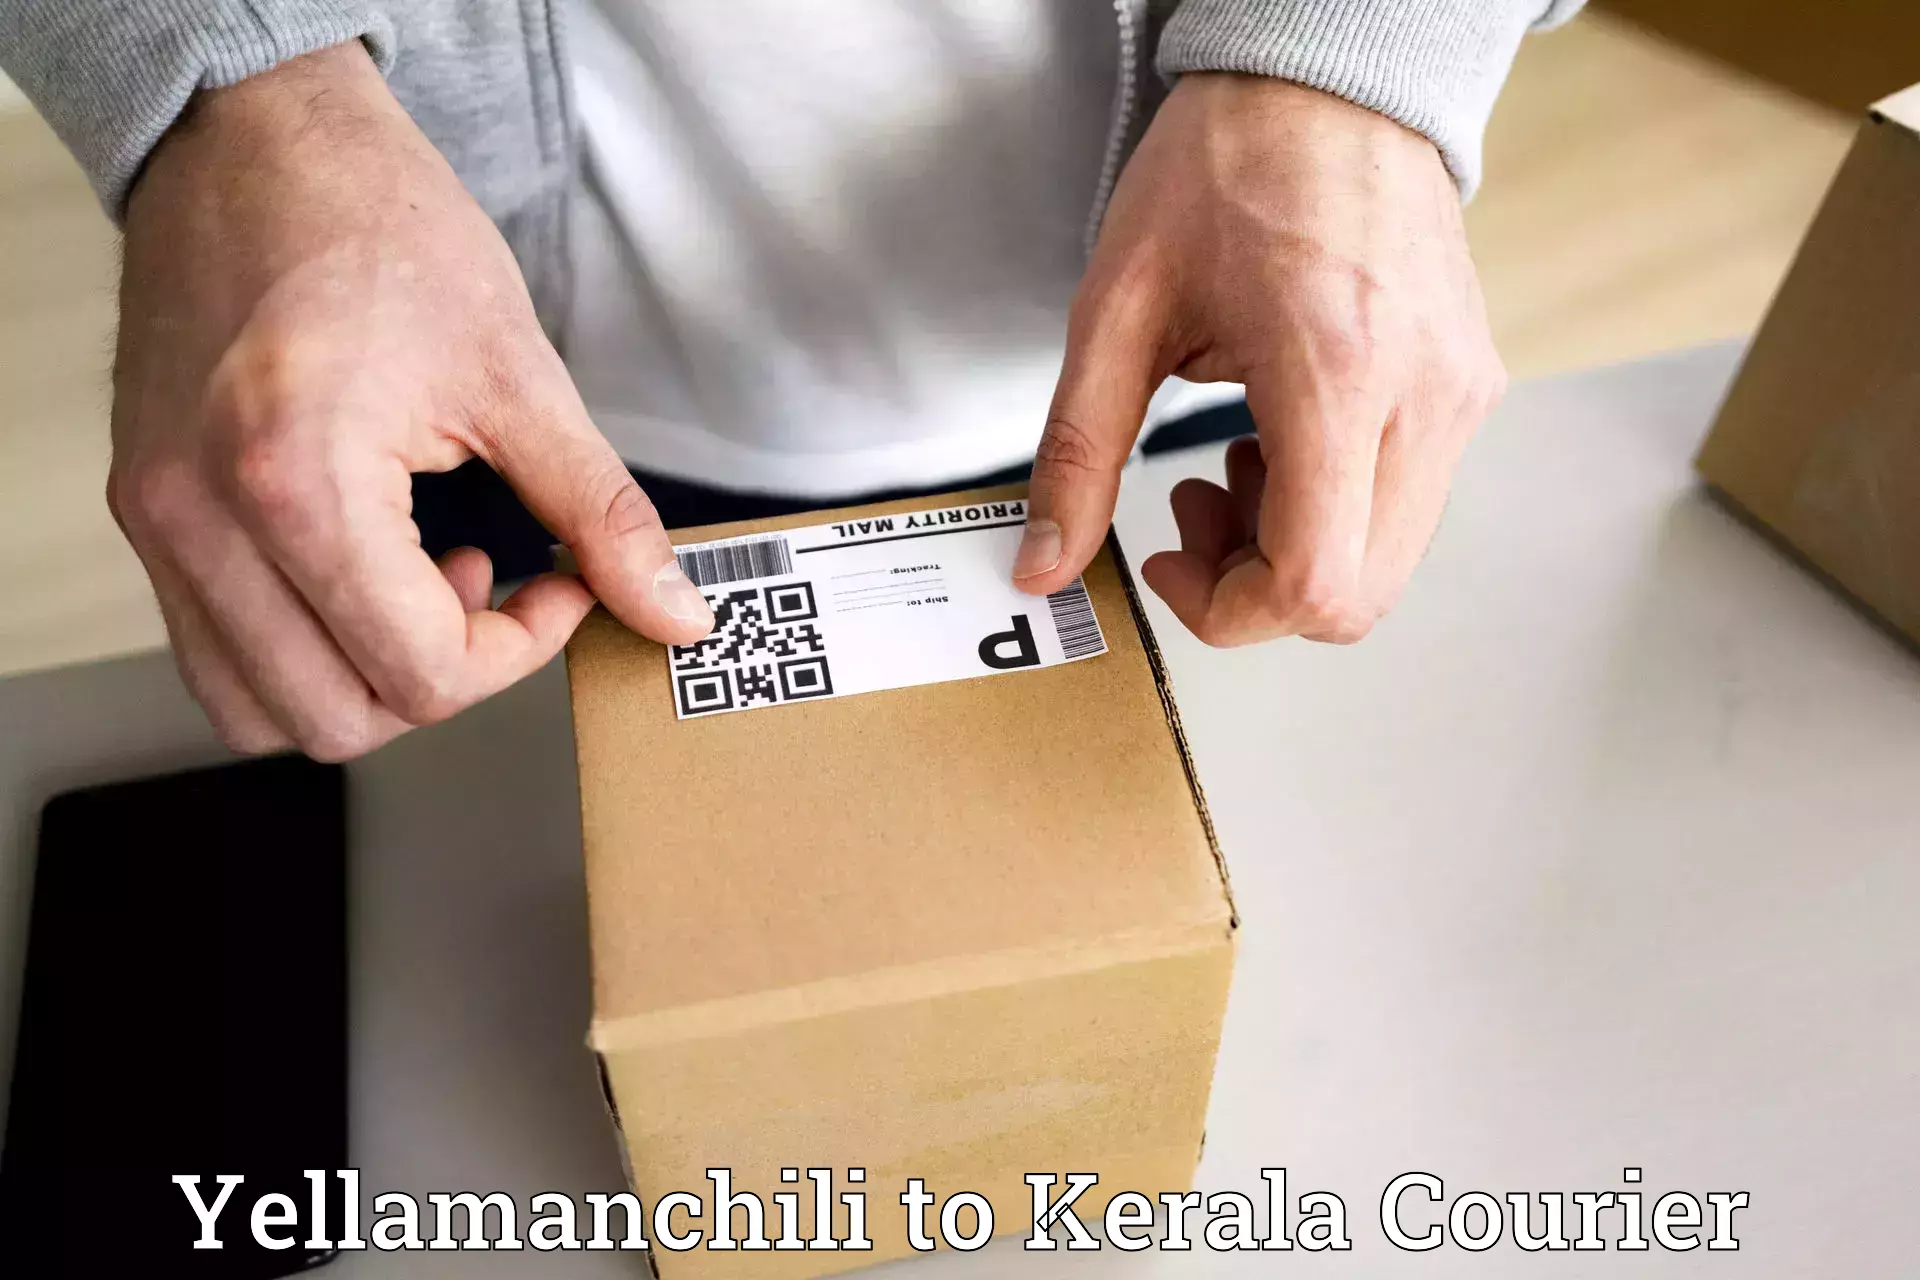 Lightweight parcel options Yellamanchili to Kerala